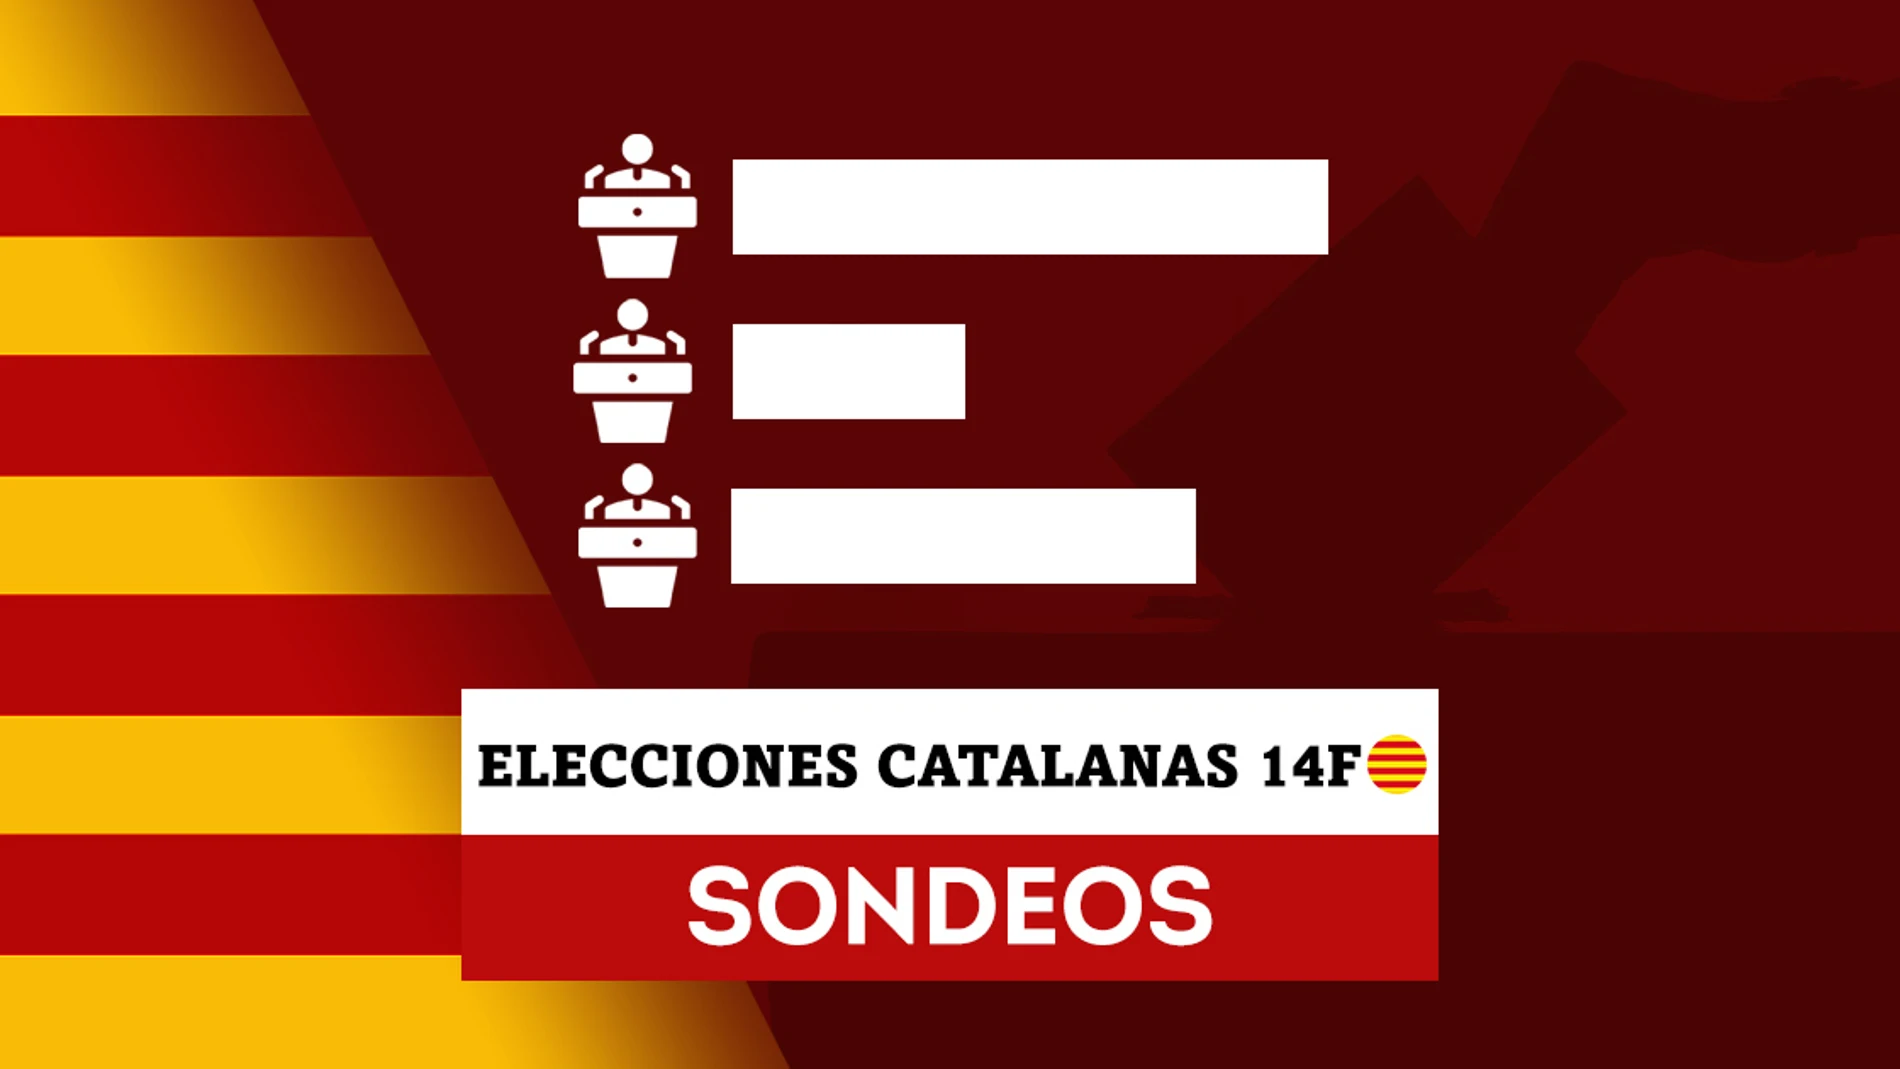 Los sondeos daría a Salvador Illa como el ganador de las elecciones catalanas